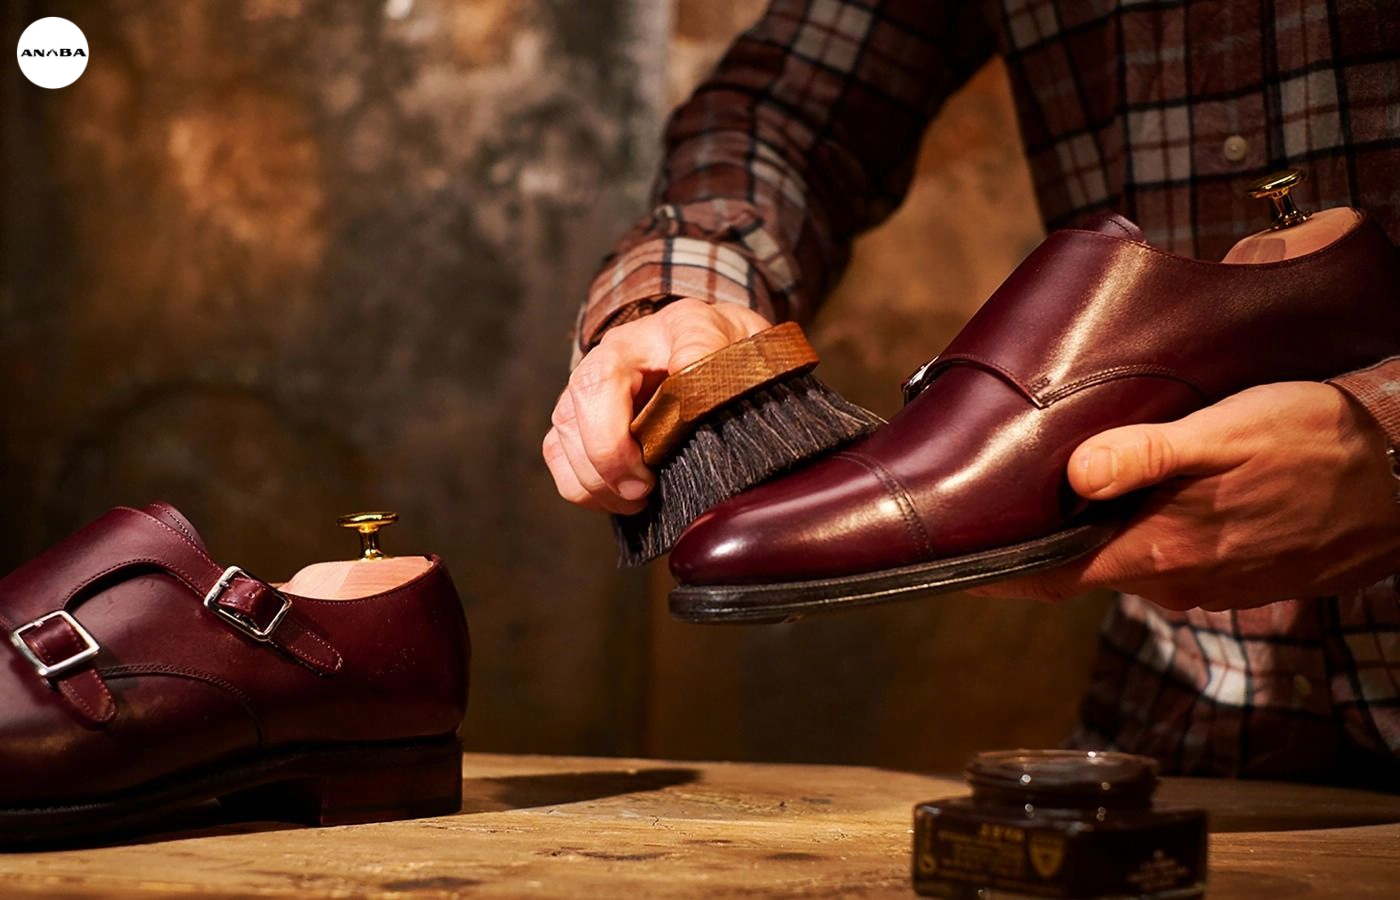 Sử dụng chất dưỡng da giúp bảo quản giày bền, đẹp hơn